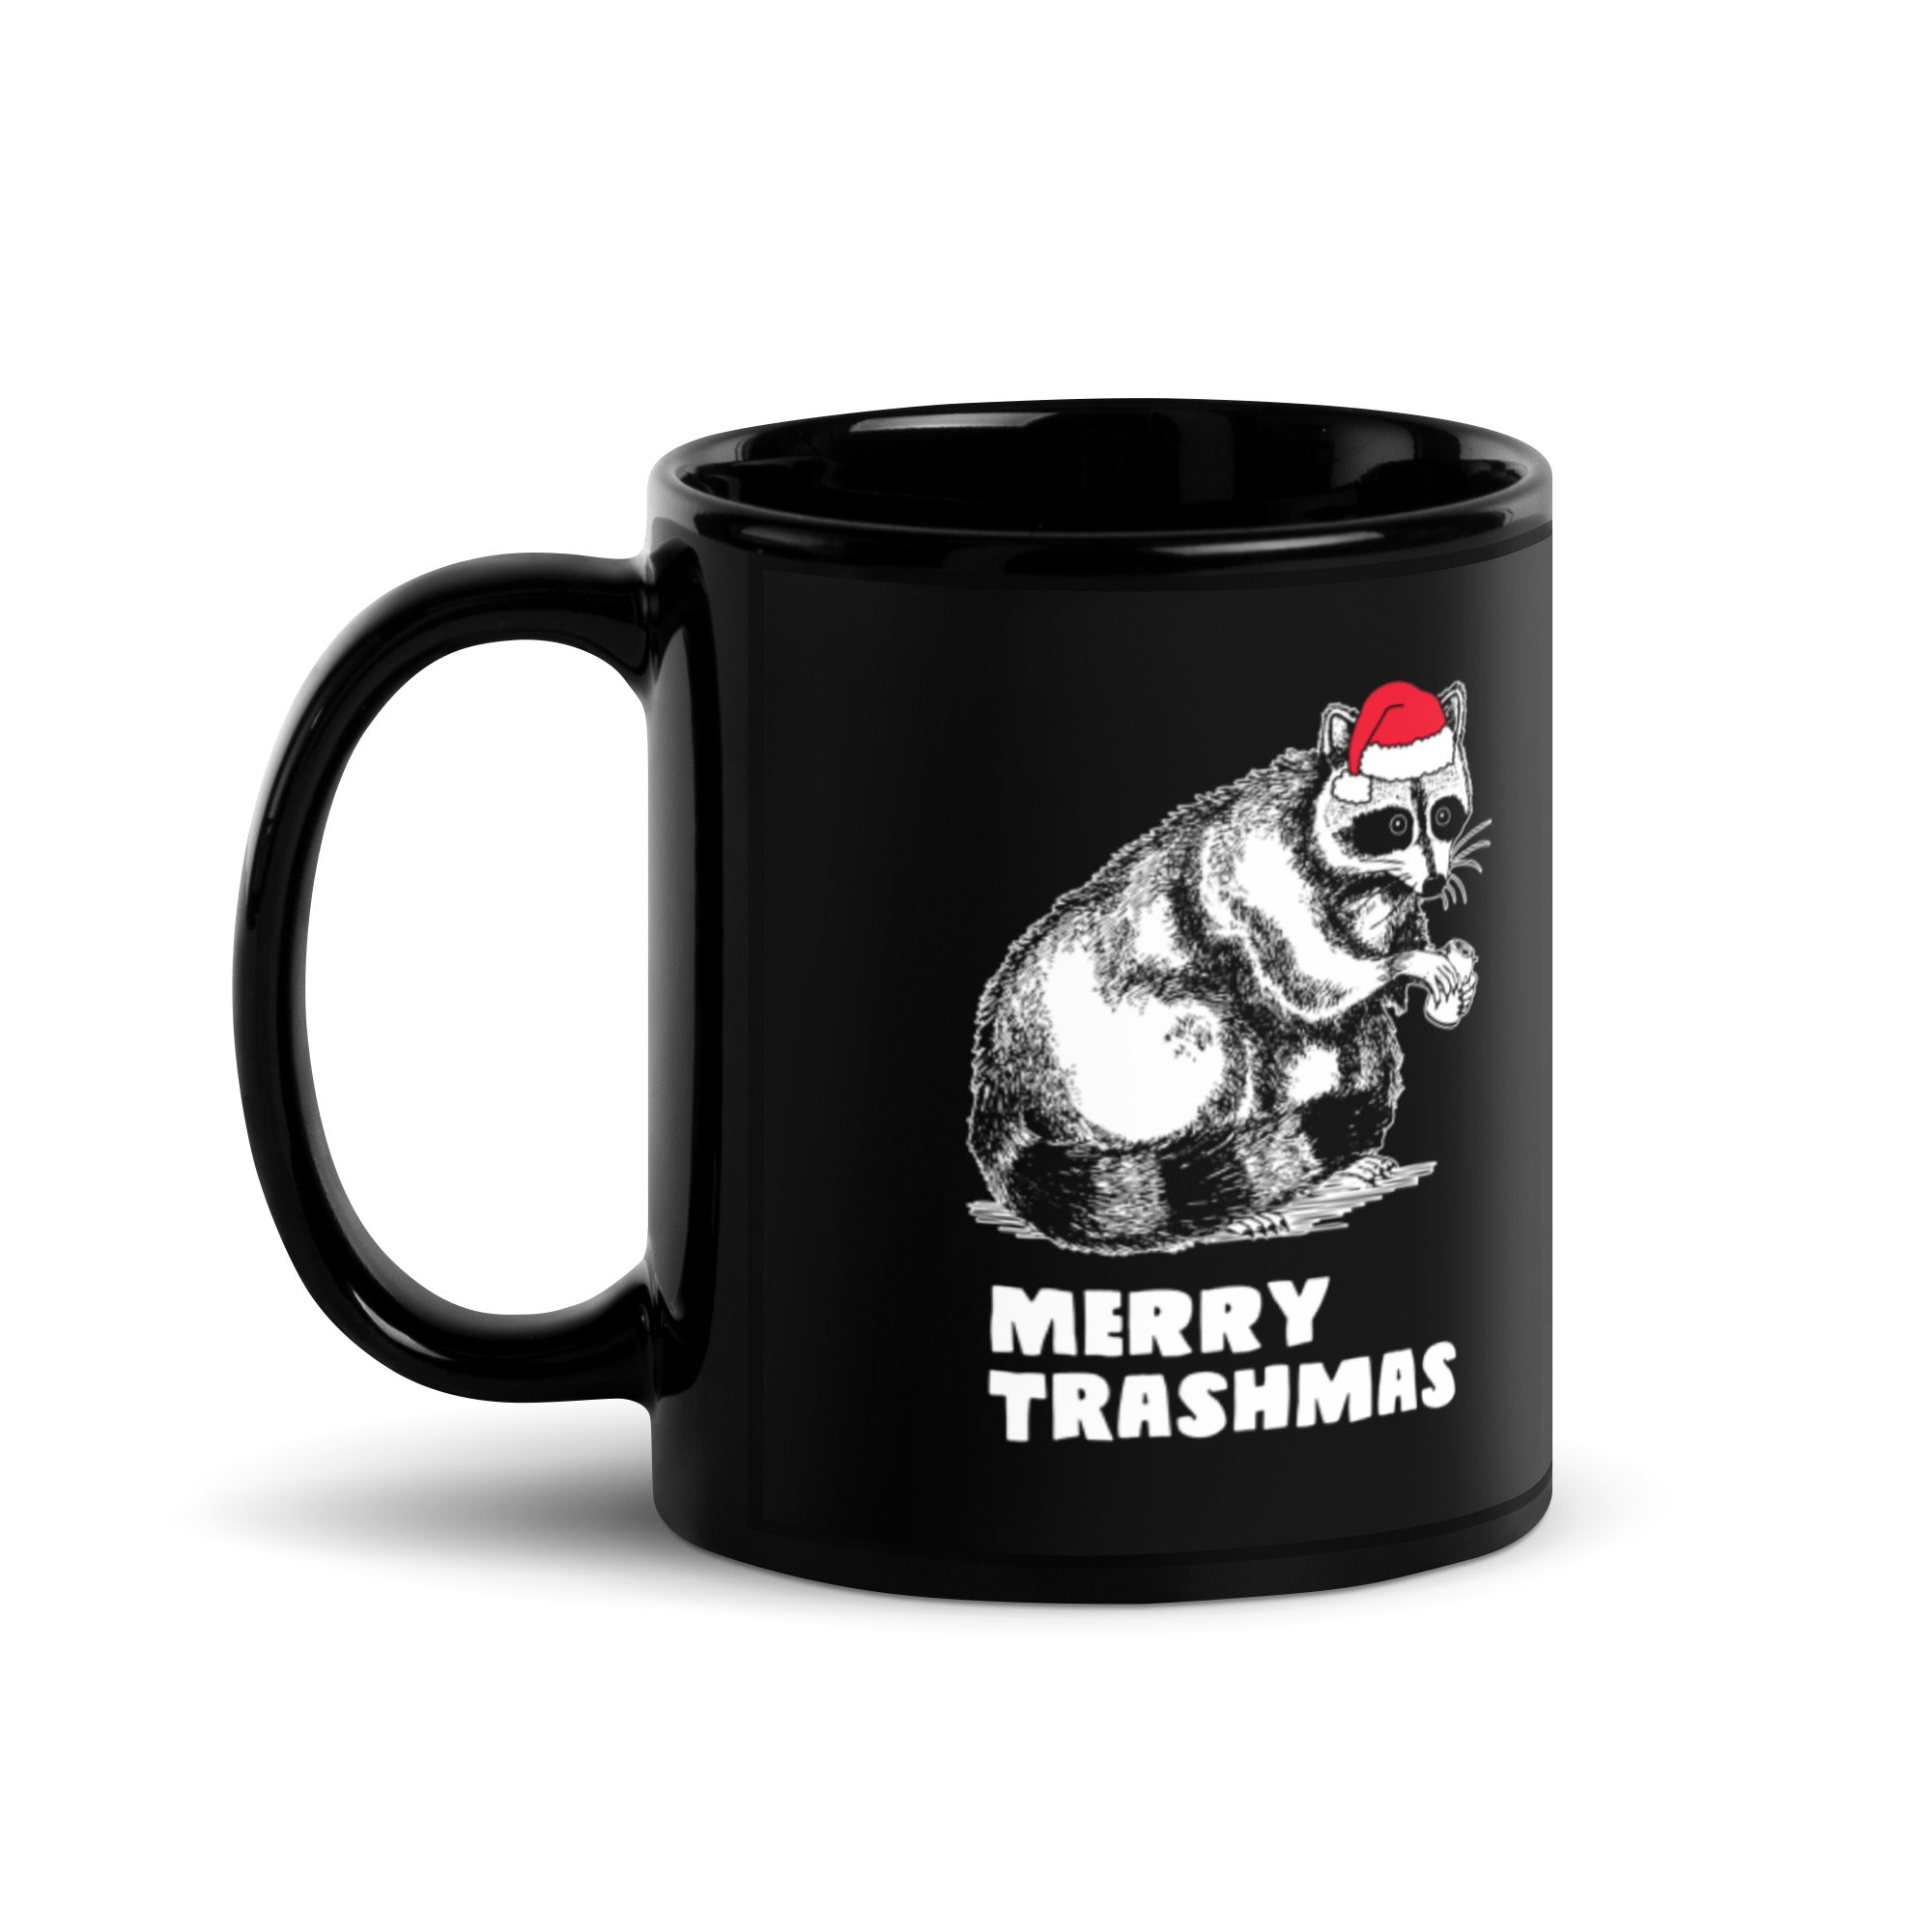 Merry Trashmas Mug